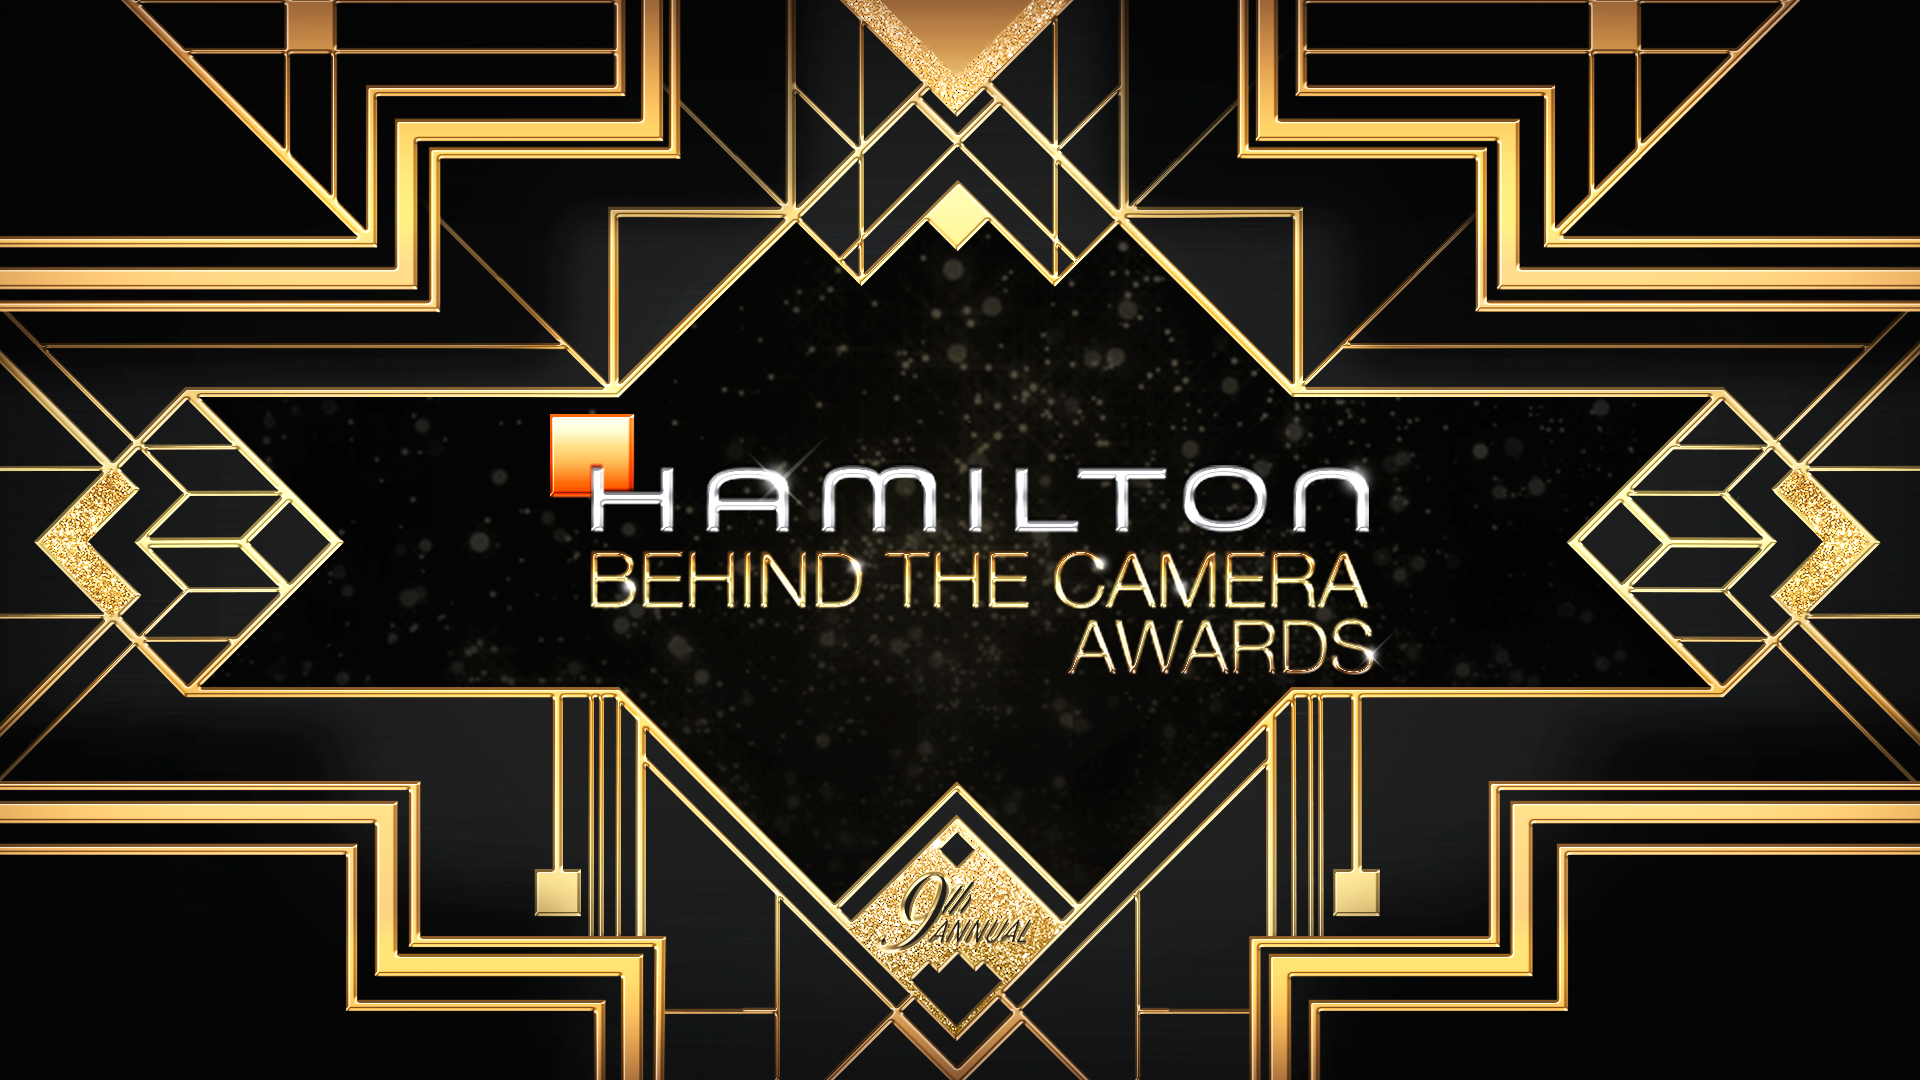 Hamilton Behind the Camera Awards